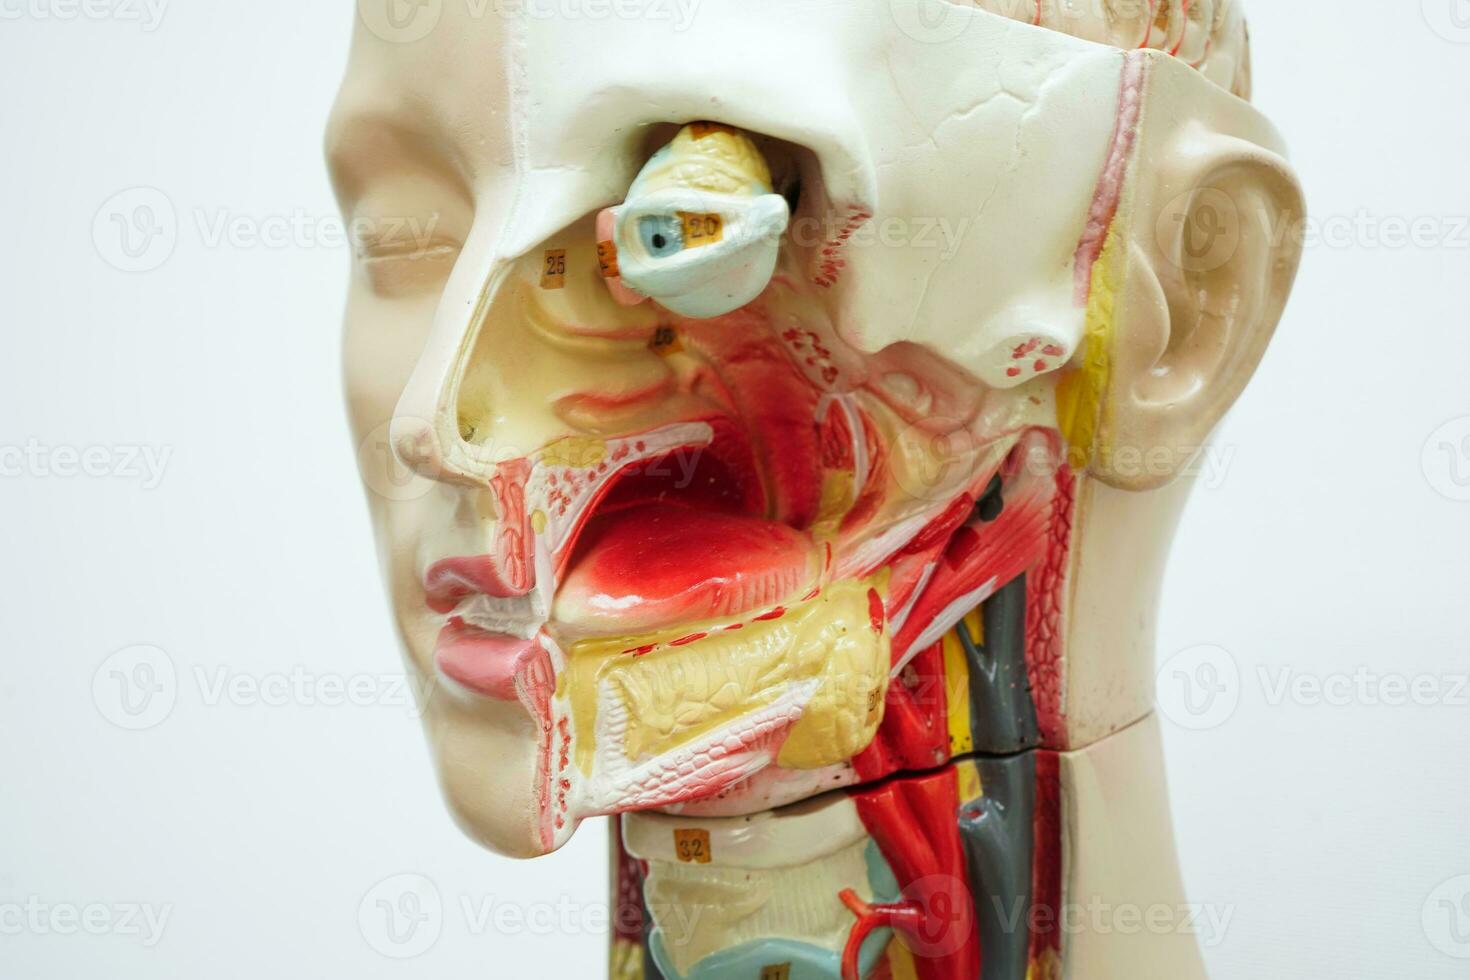 mänsklig kropp anatomi organ modell med mun, tunga, hals och öga i huvud för studie utbildning medicinsk kurs. foto